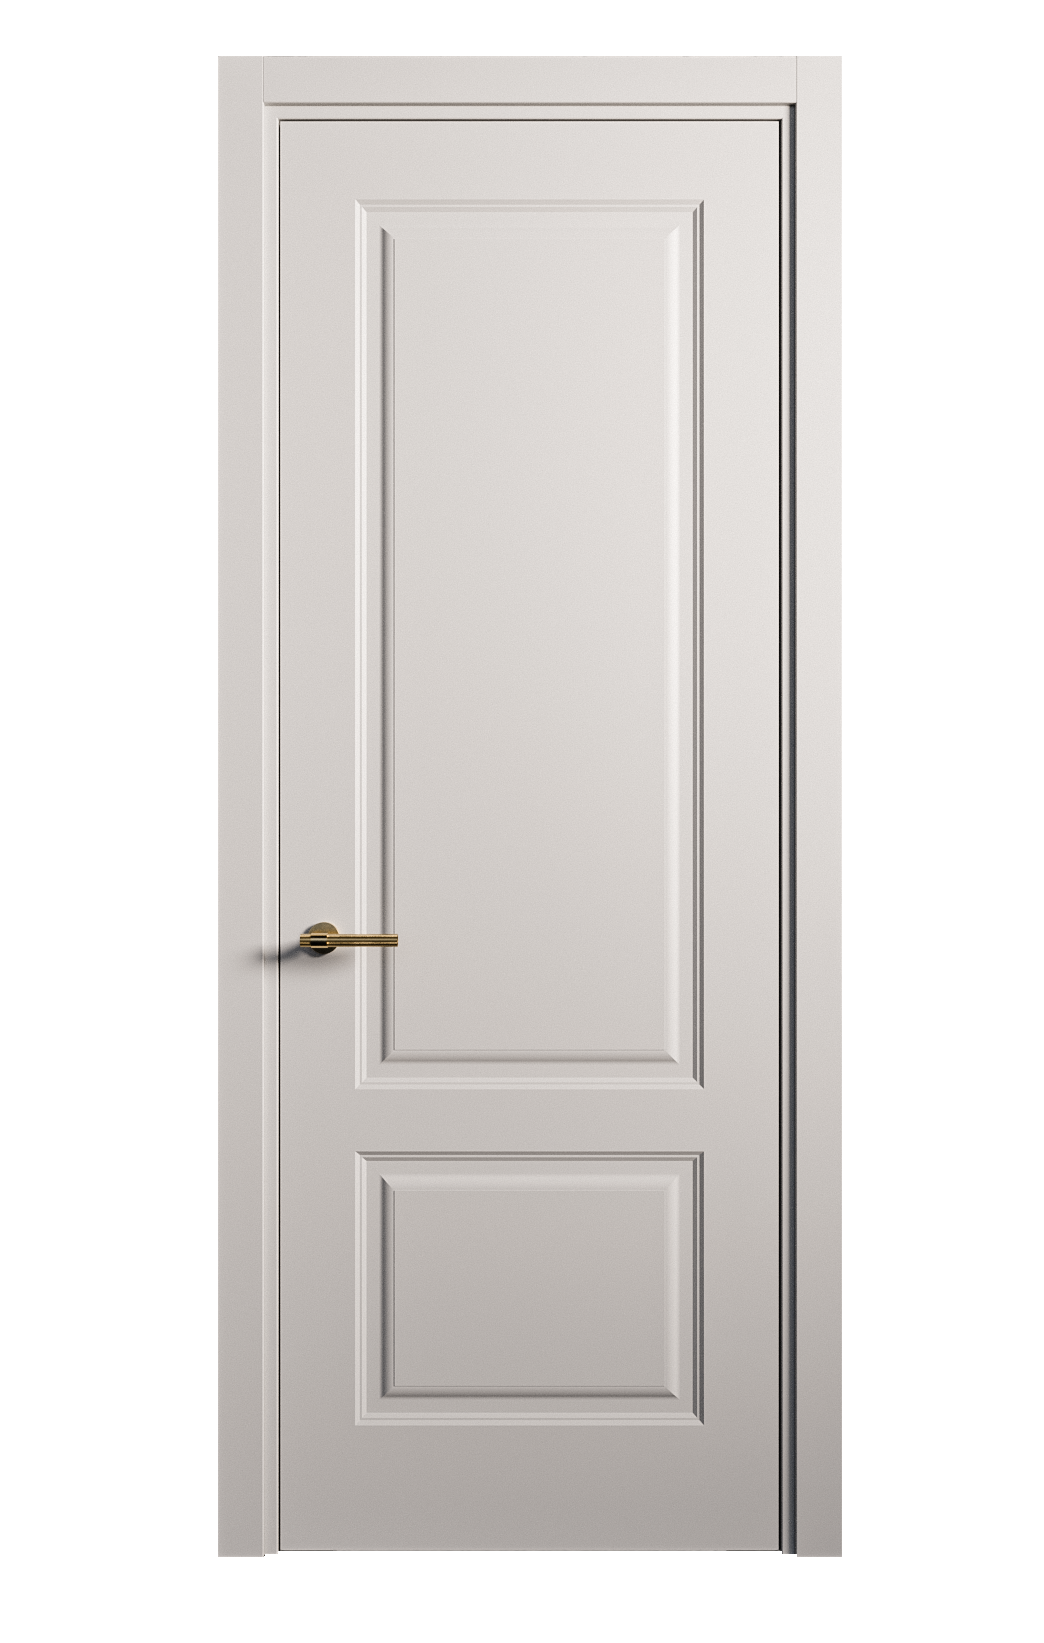 Межкомнатная дверь Вита-1 глухая эмаль ral 7047 26252